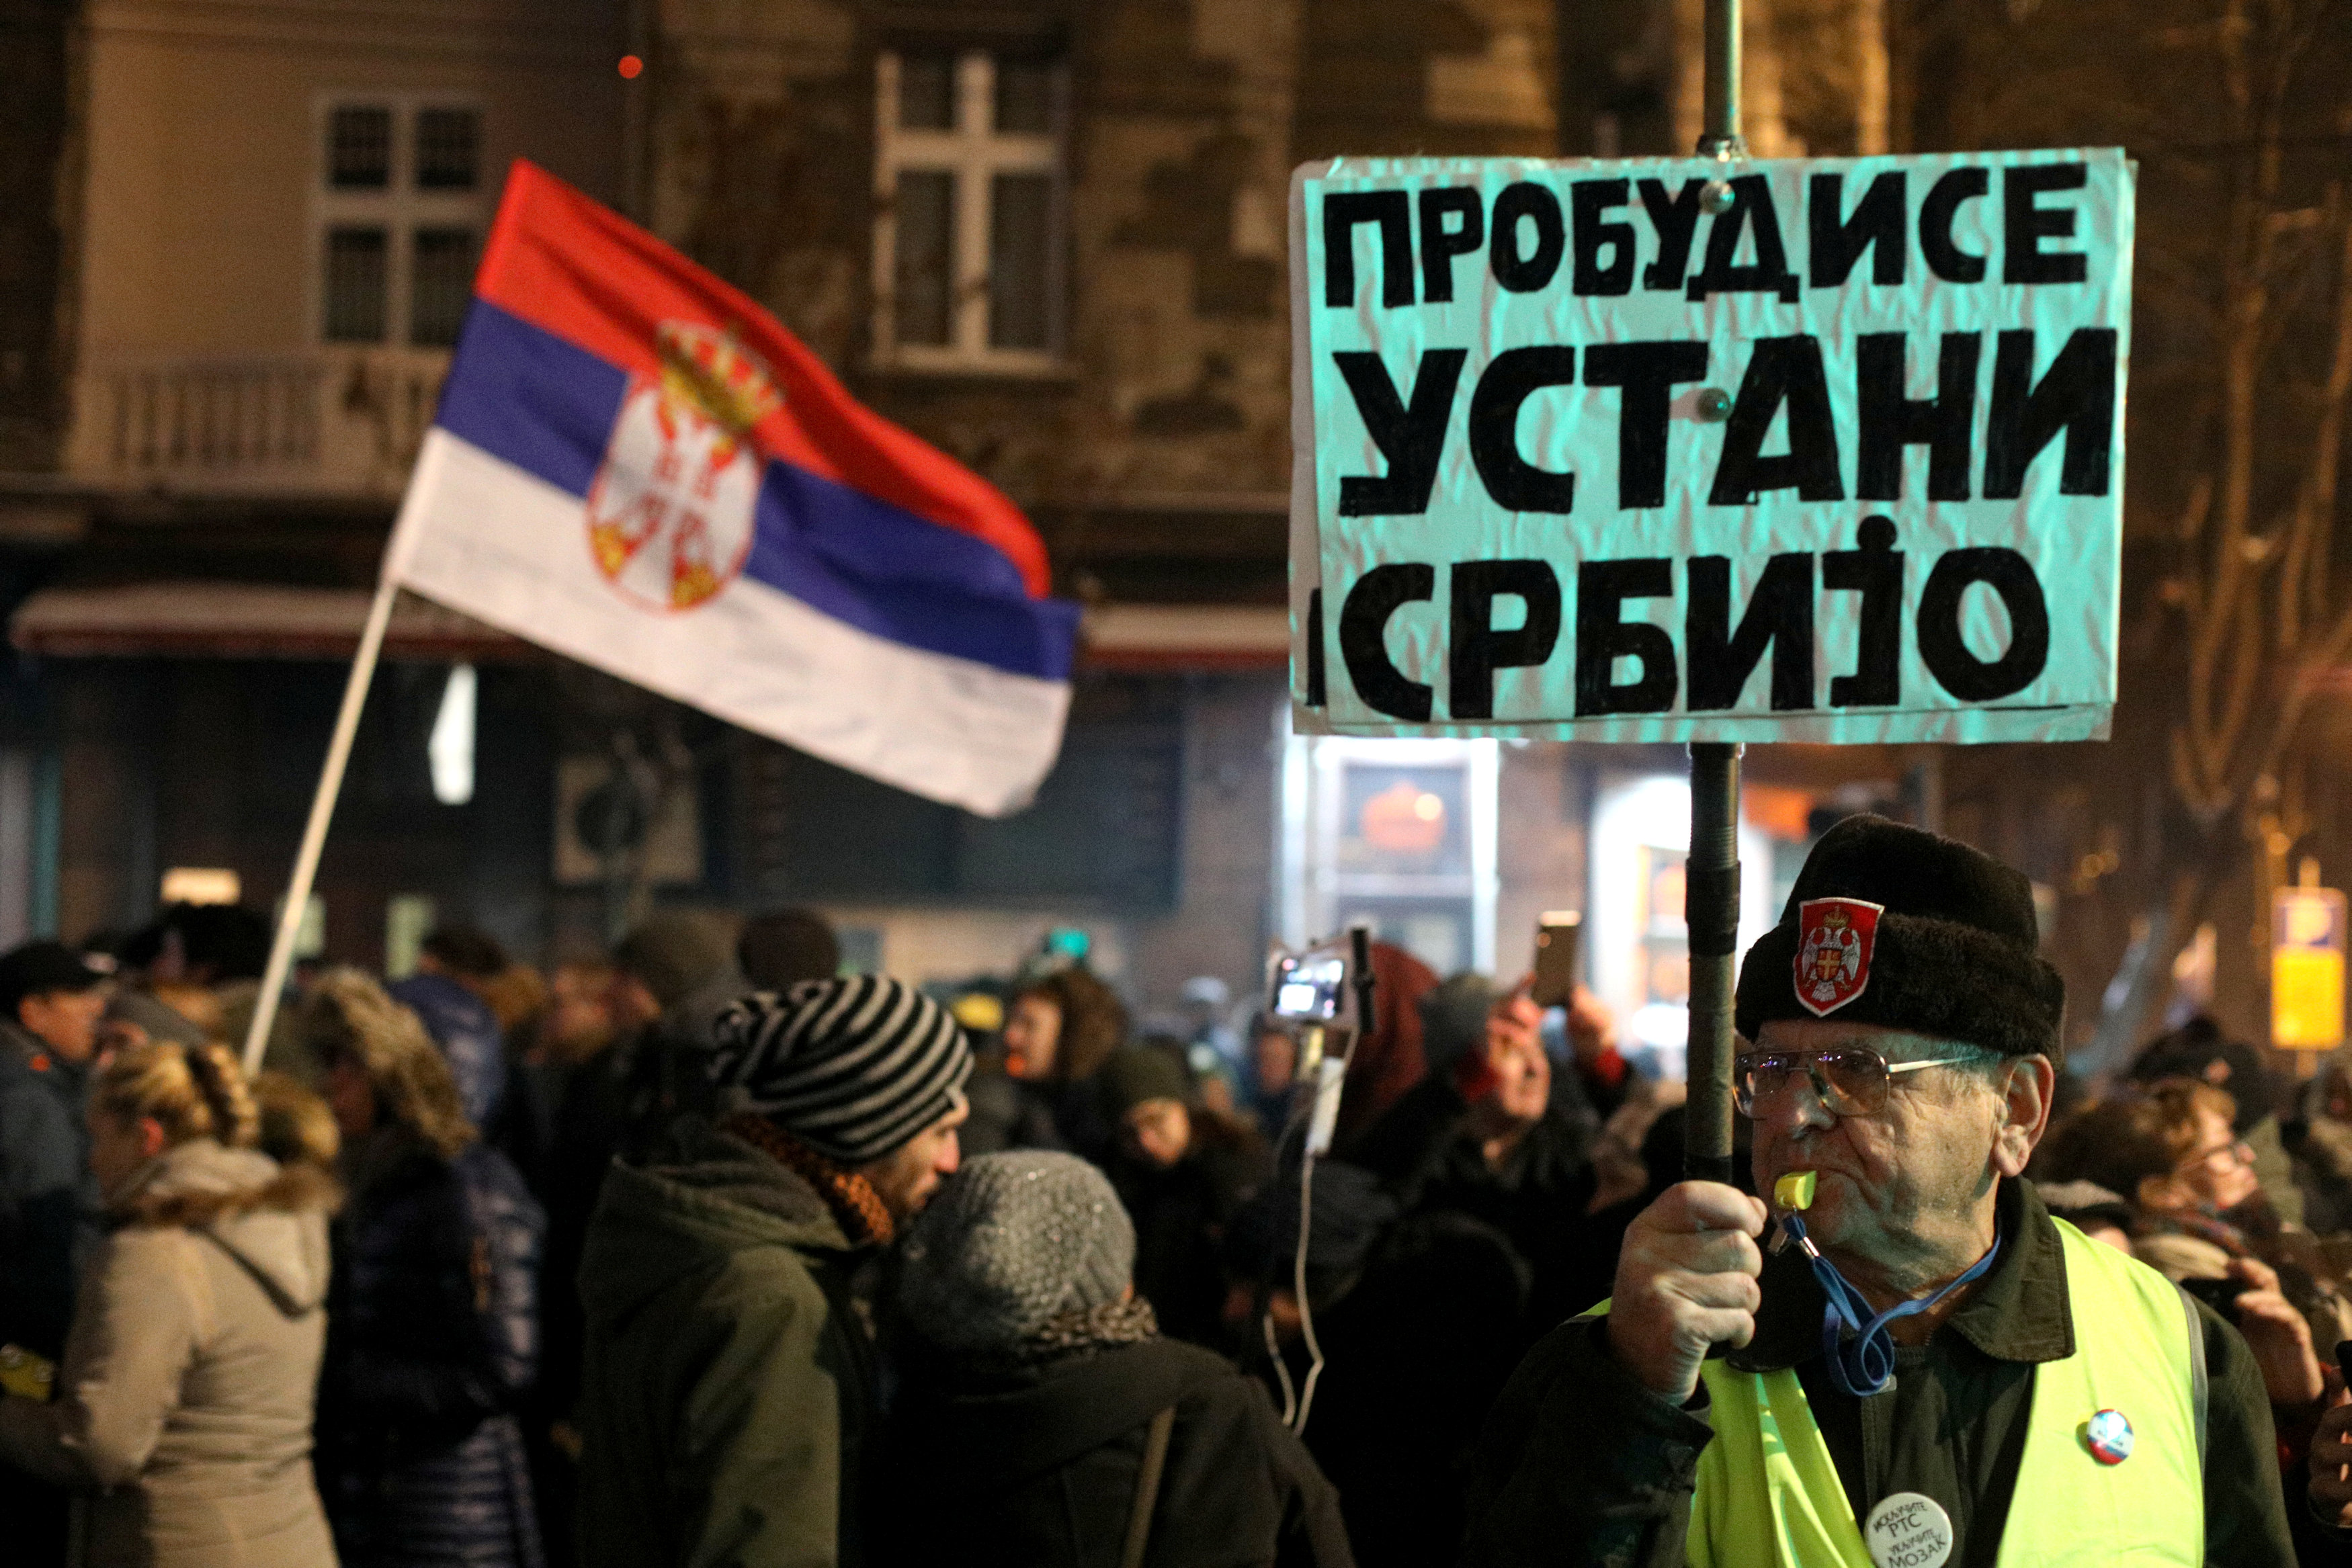    الاحتجاجات الحاشدة ضد الرئيس الصربى فى شوارع بلجراد (1)